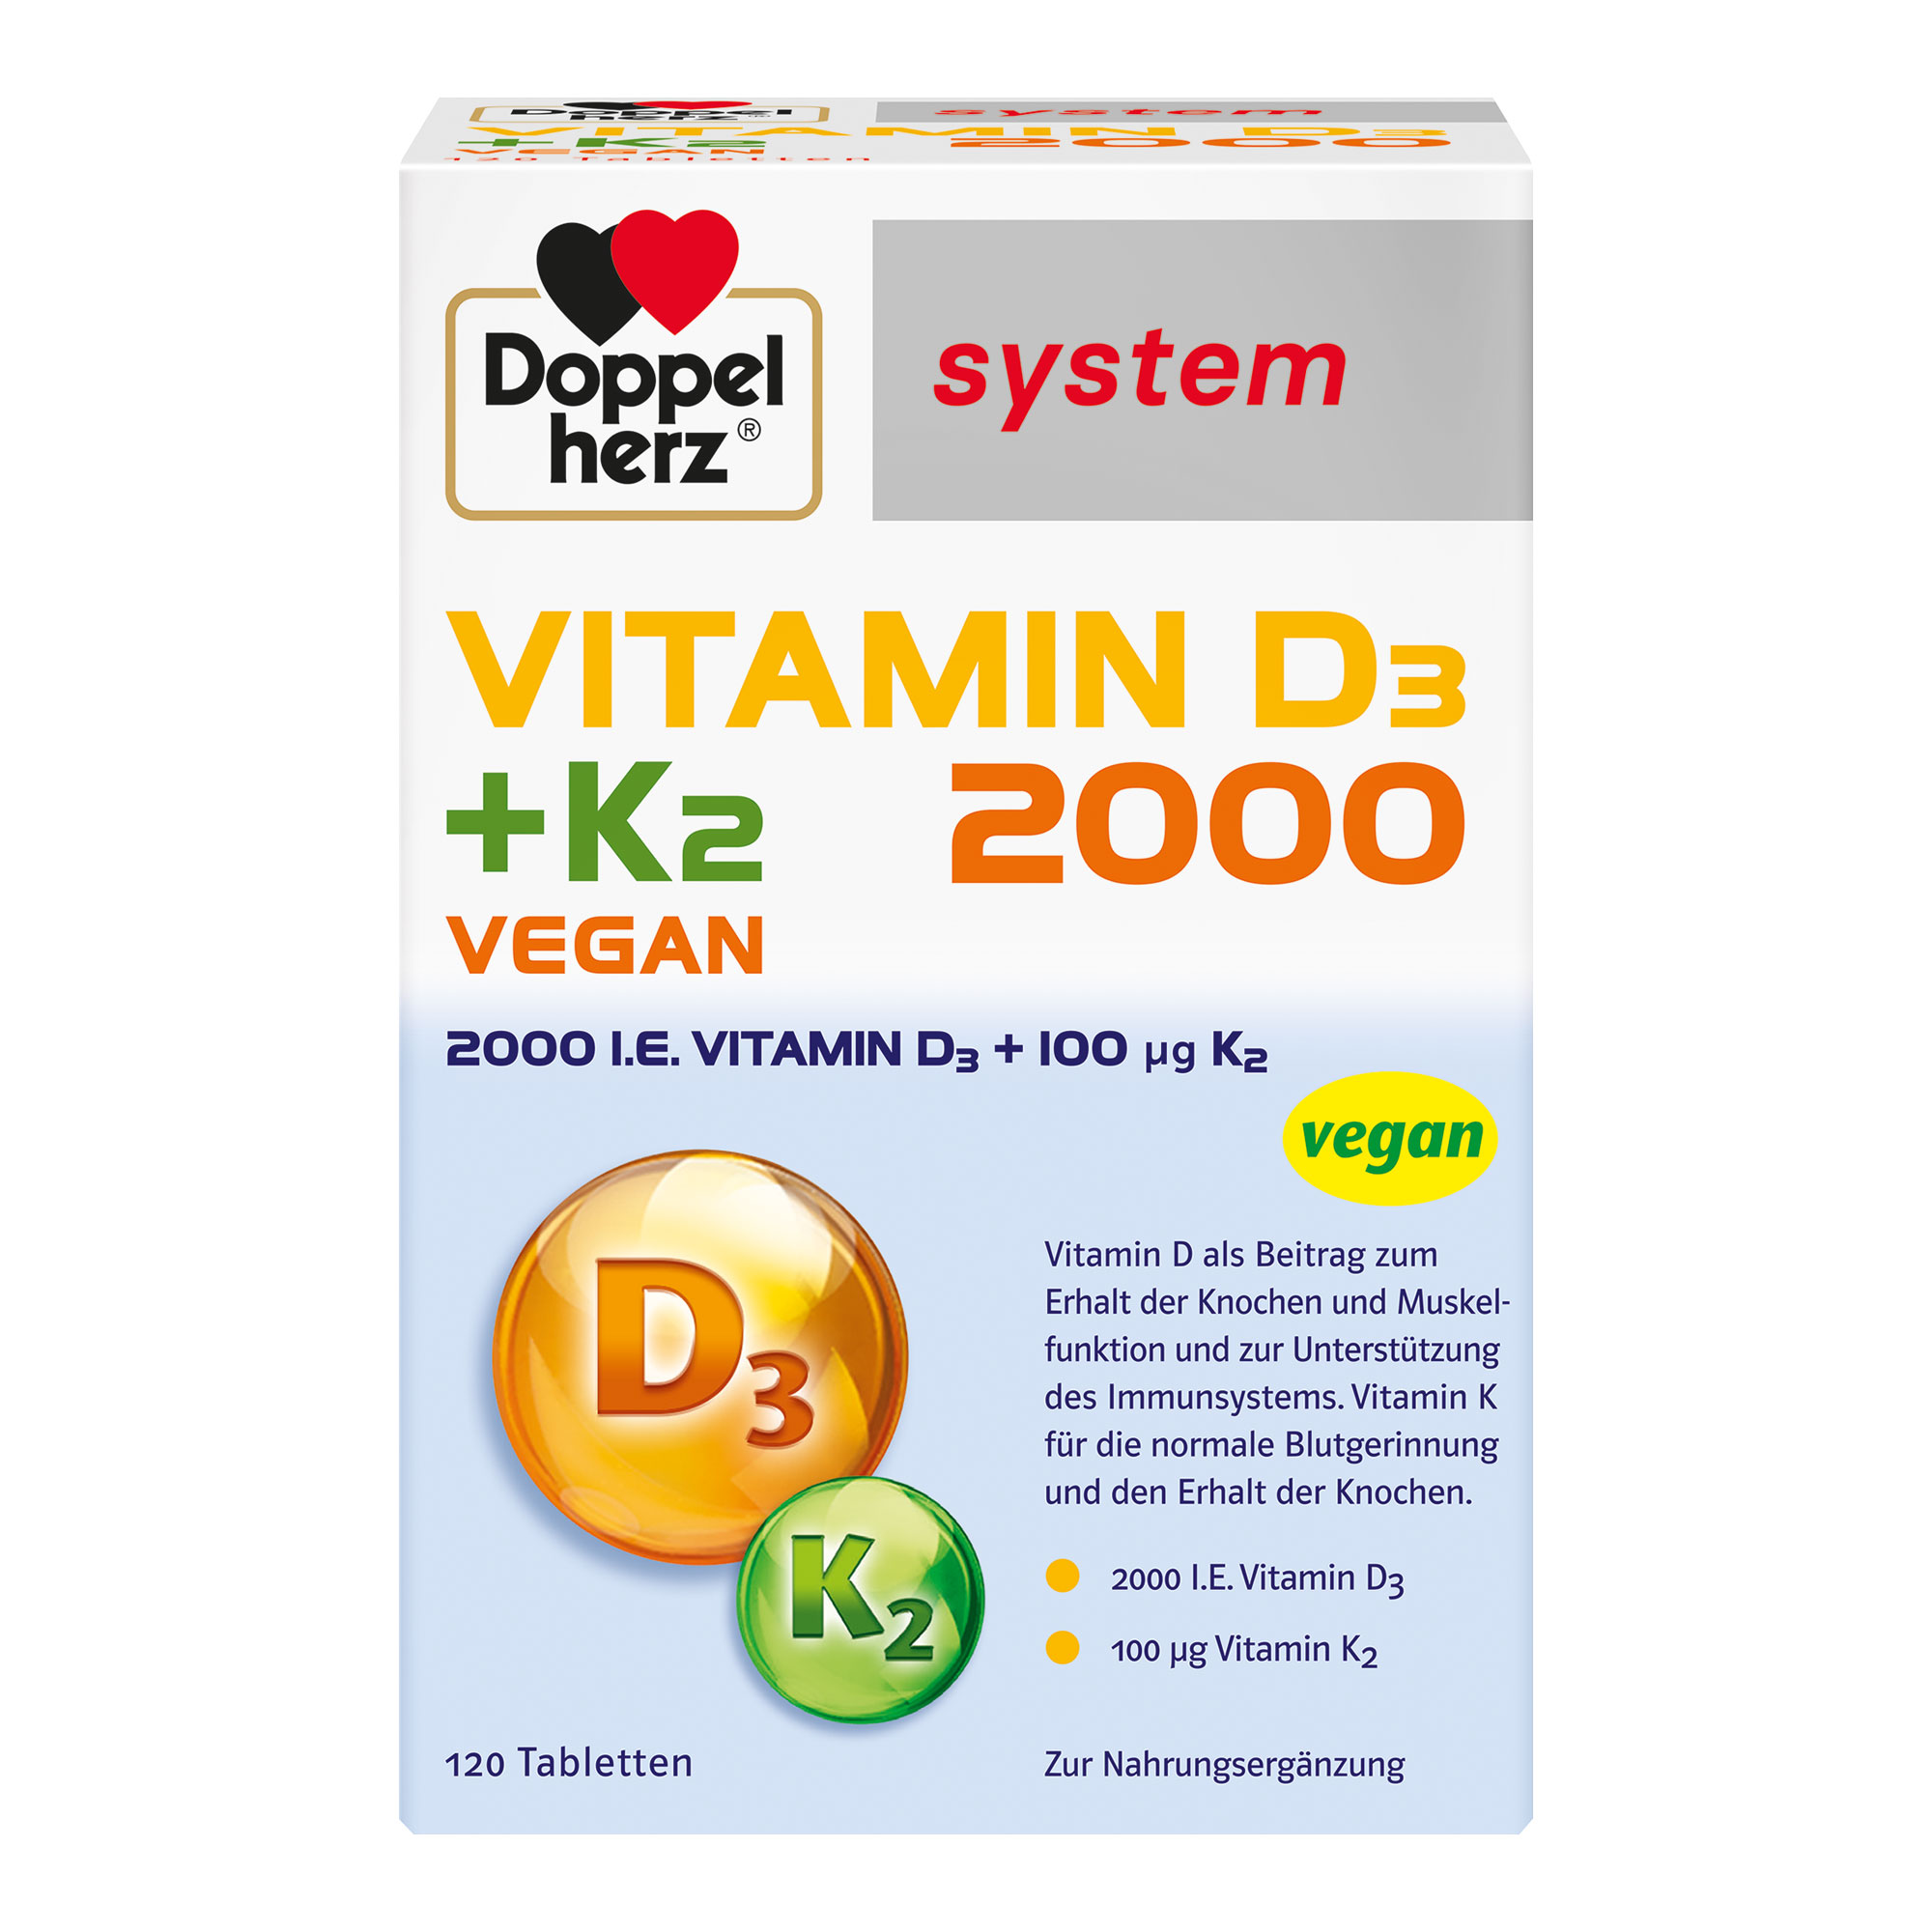 Nahrungsergänzungsmittel mit Vitamin D3 und K2.